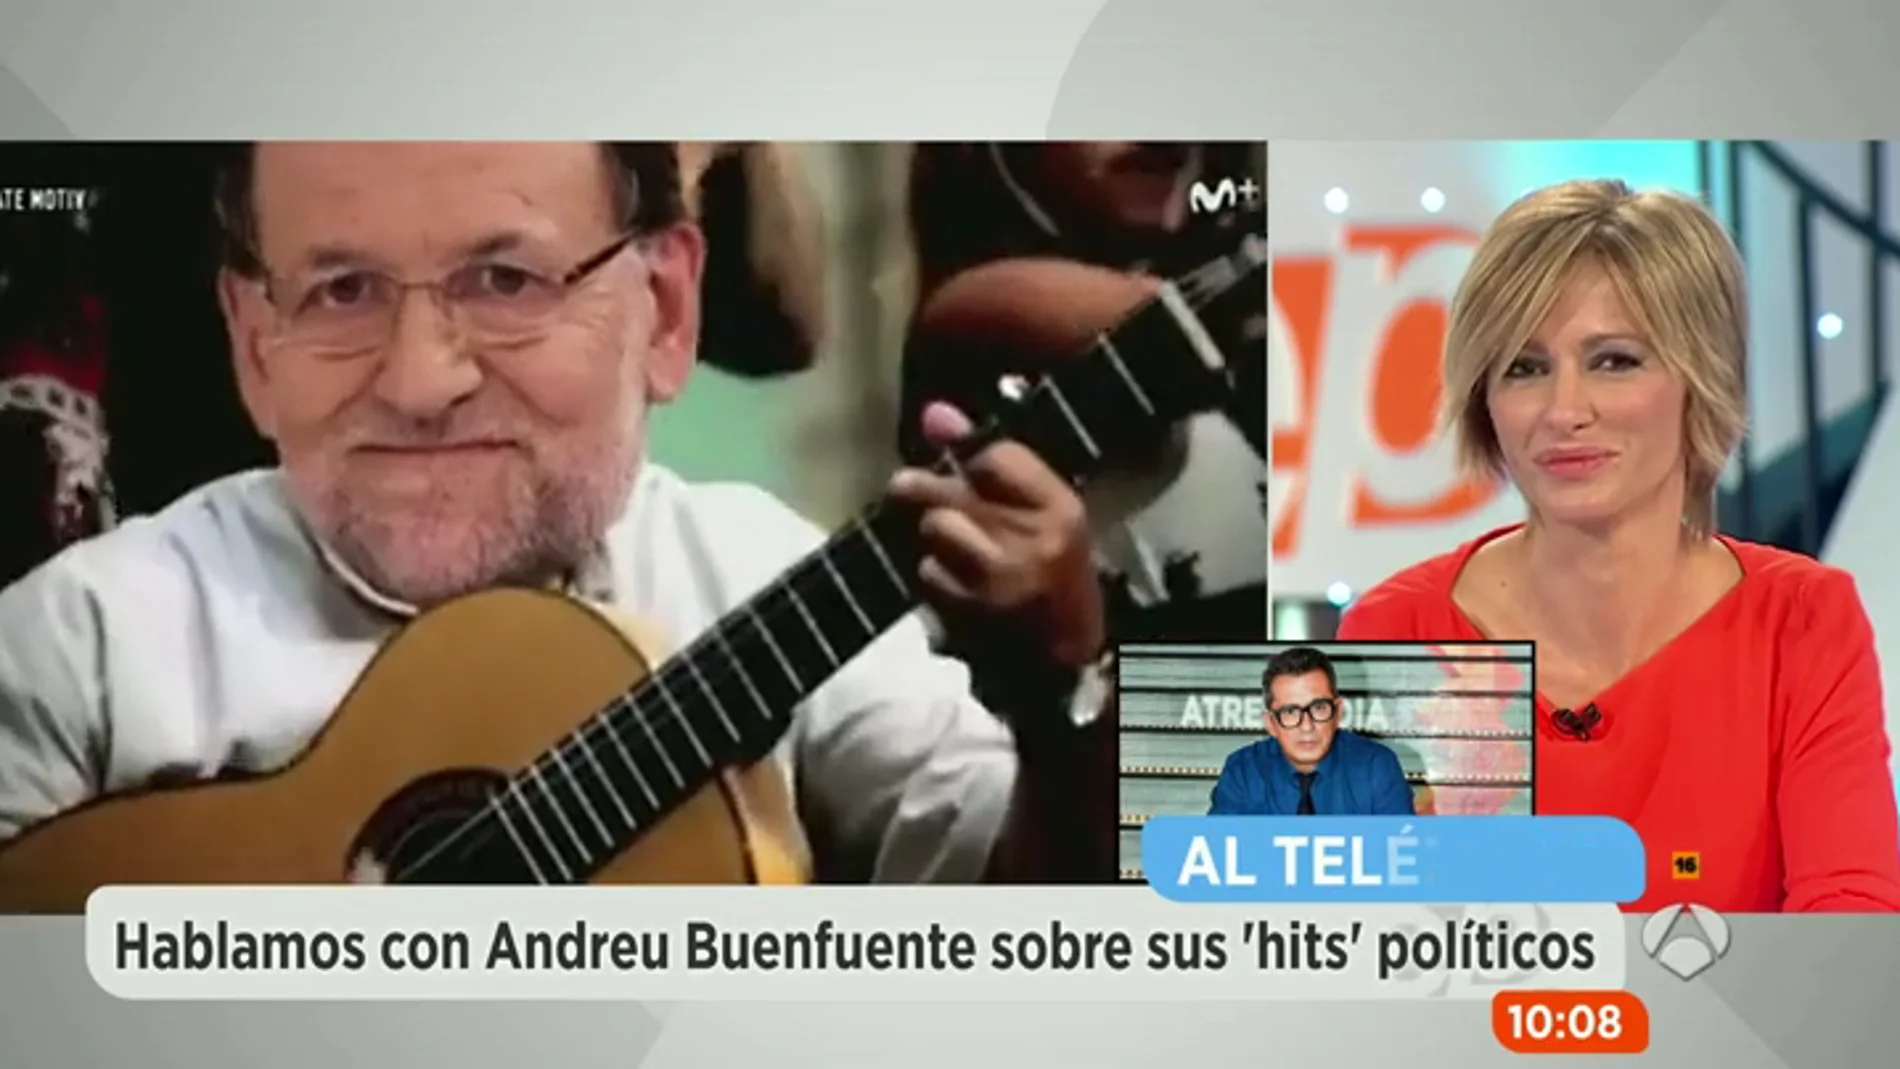 Frame 45.743099 de: Andreu Buenafuente: "Rajoy es el político más completo como objetivo humorístico"